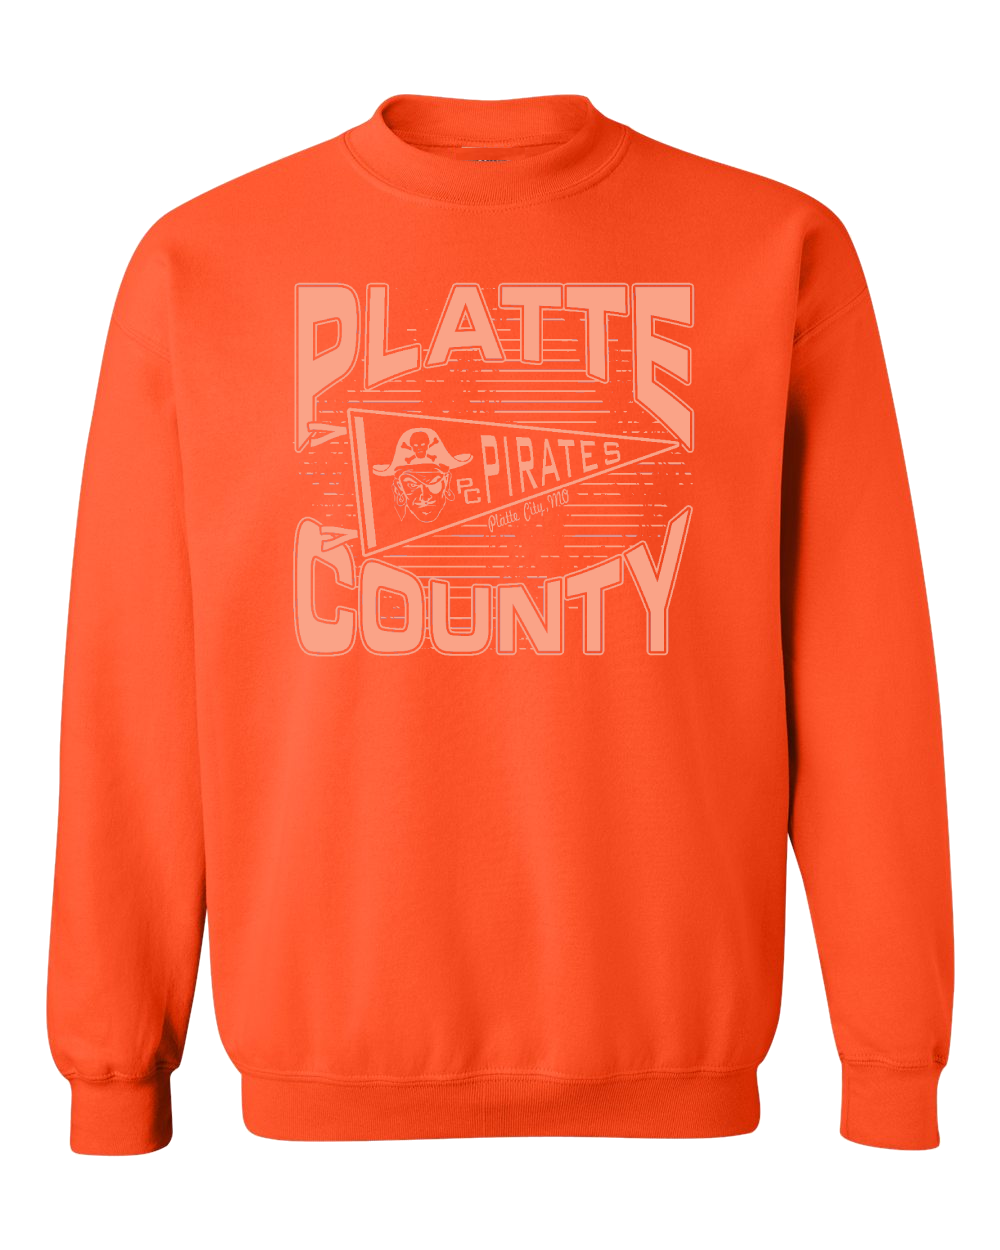 Platte County Color Rush Crewneck (Adult)